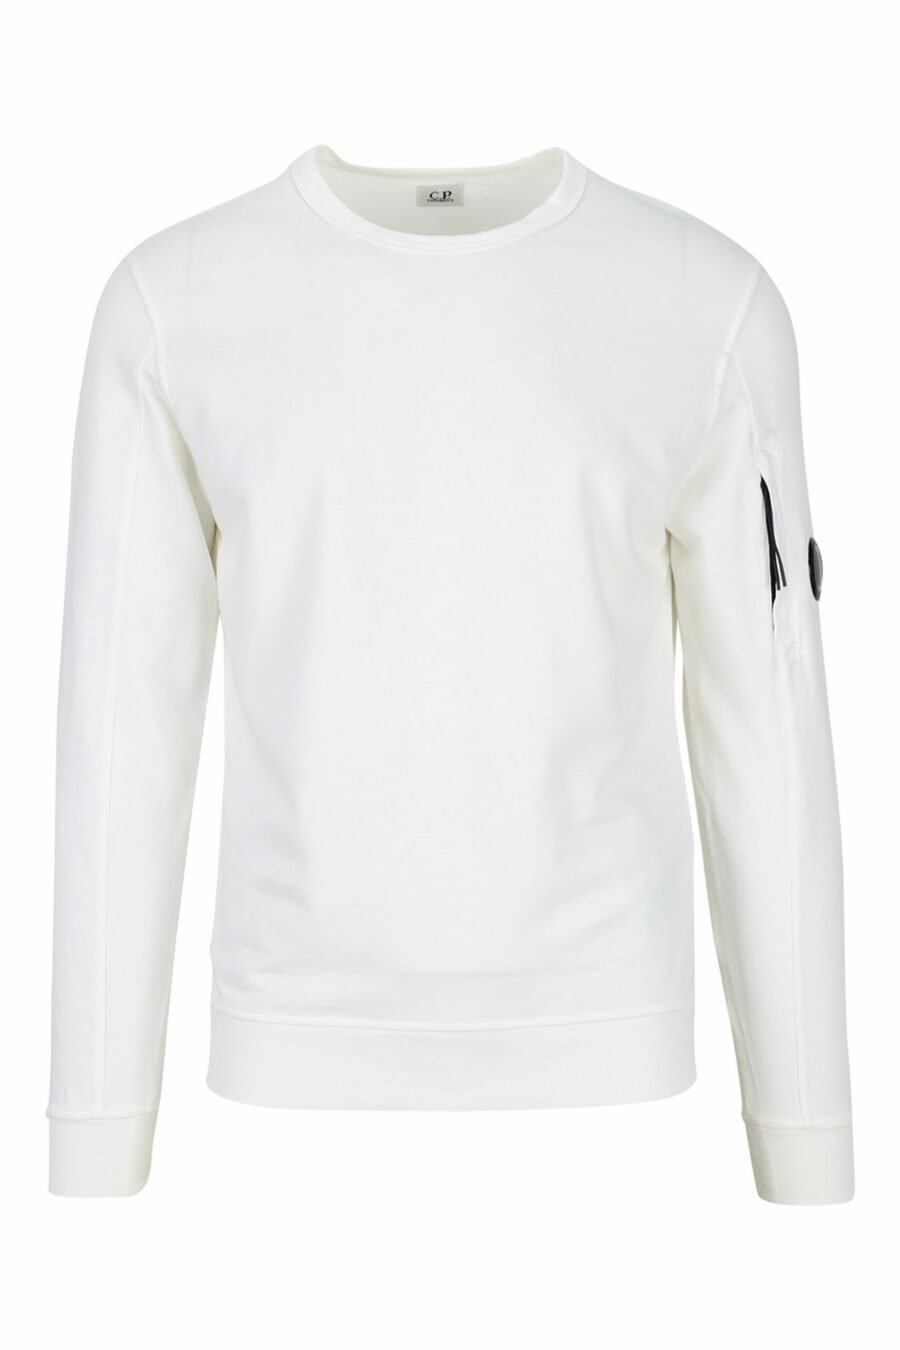 Sweatshirt blanc avec lentille latérale minilogue - 7620943591705 scaled